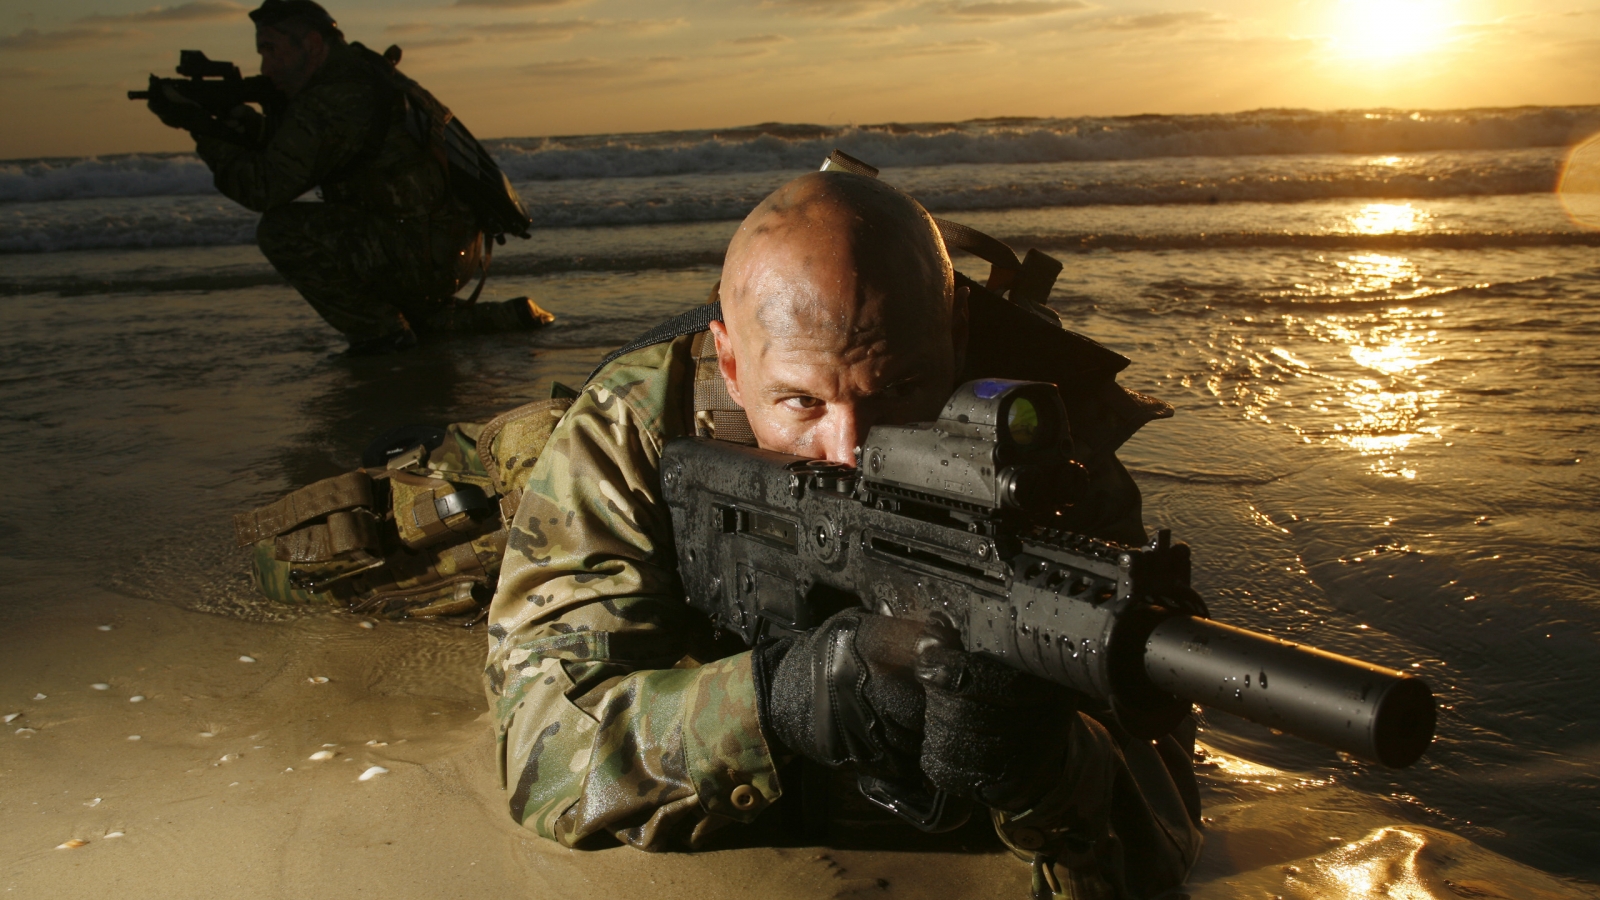 Sniper War for 1600 x 900 HDTV resolution